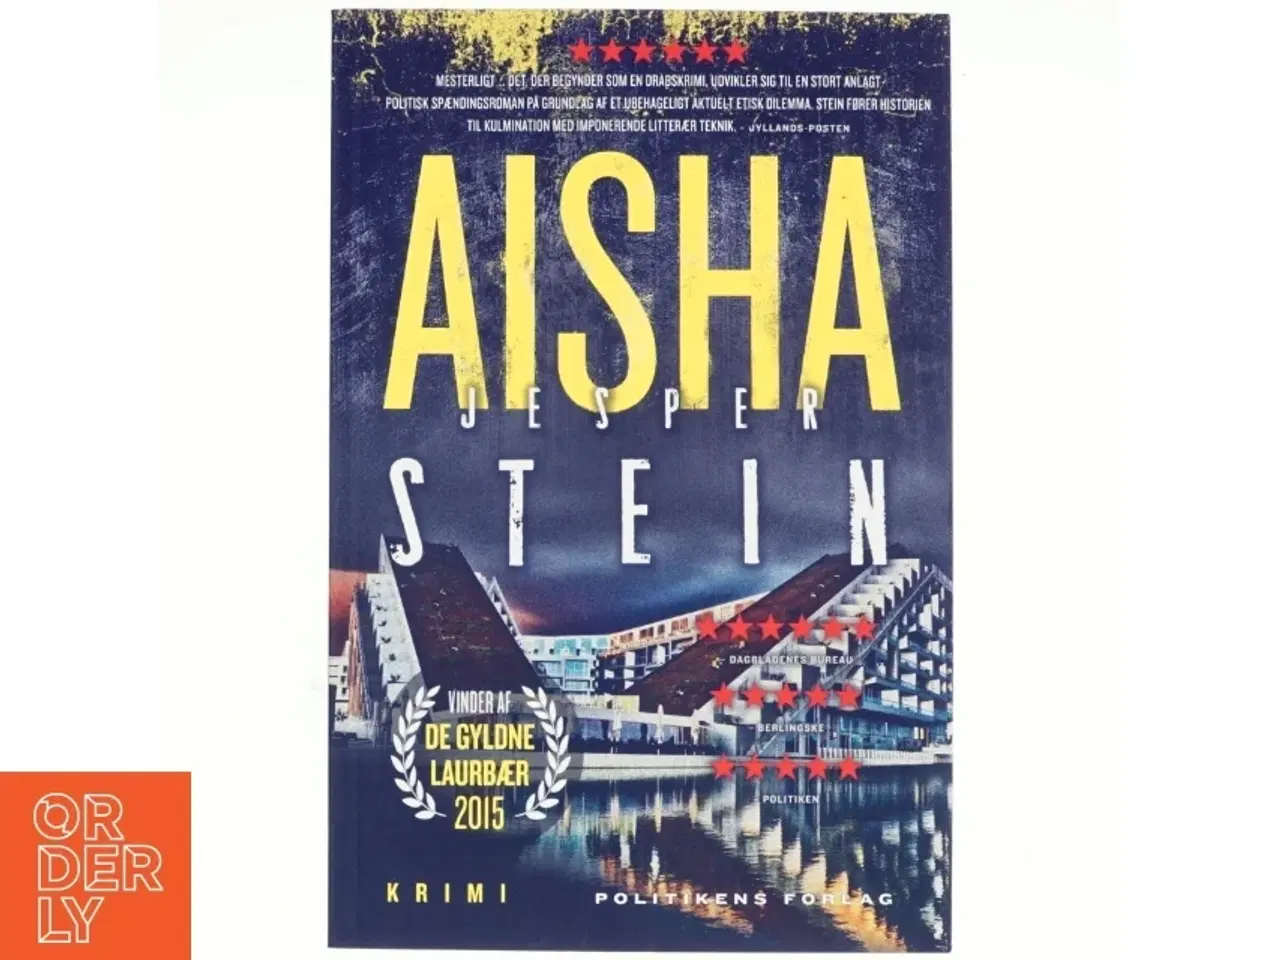 Billede 1 - Aisha : krimi af Jesper Stein (Bog)